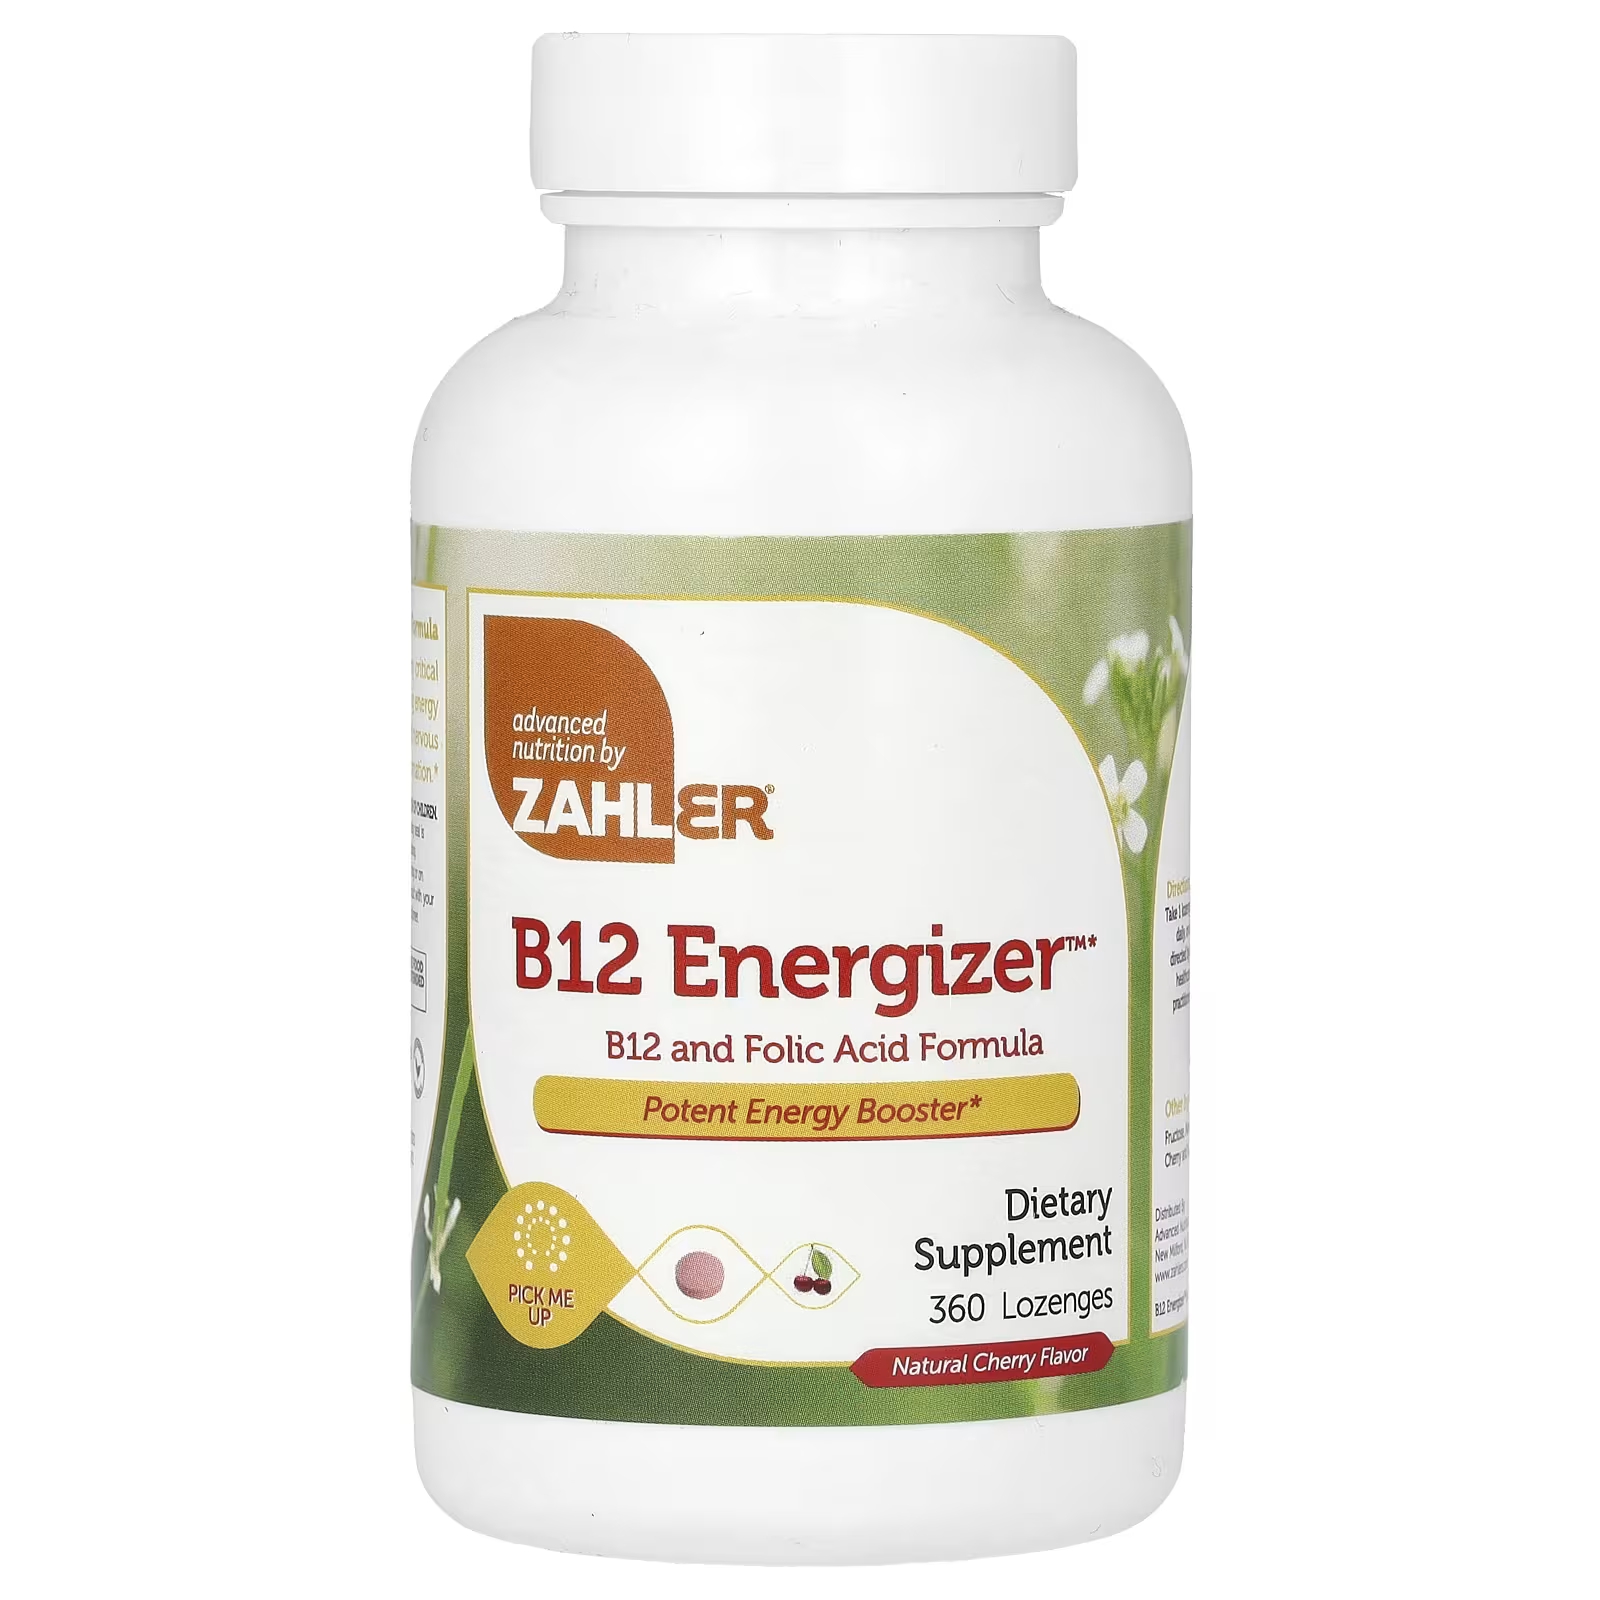 Пищевая добавка Zahler B12 Energizer B12 и формула фолиевой кислоты с натуральной вишней, 360 пастилок пищевая добавка zahler b12 energizer b12 и формула фолиевой кислоты с натуральной вишней 360 пастилок